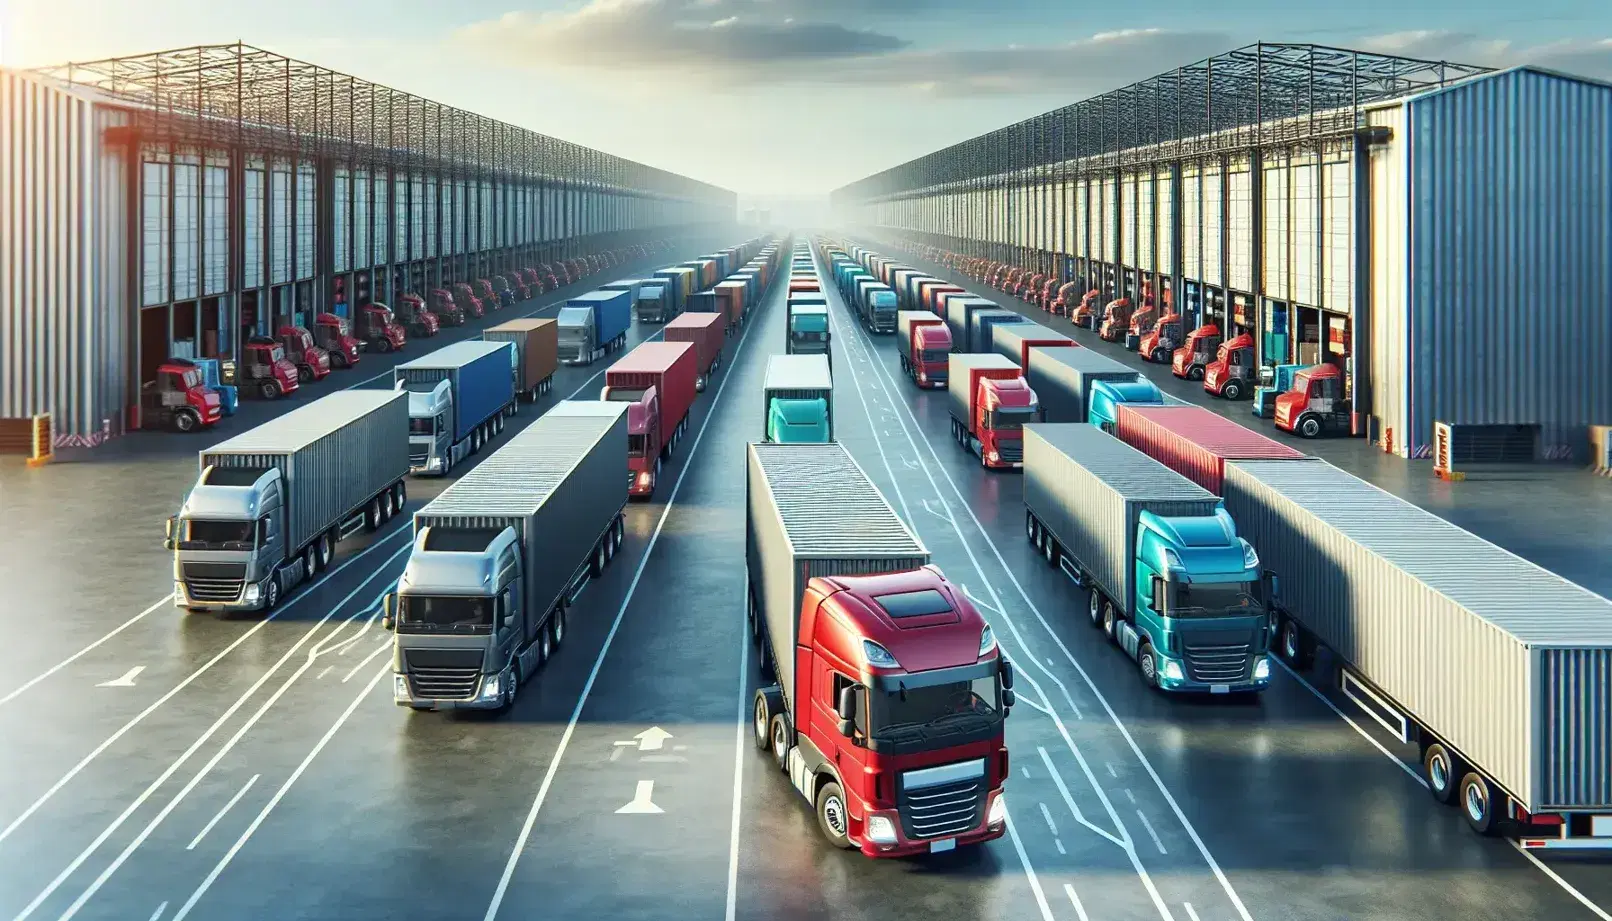 Camiones de carga alineados en centro de distribución logístico con estructuras de almacenamiento al fondo y cielo despejado.